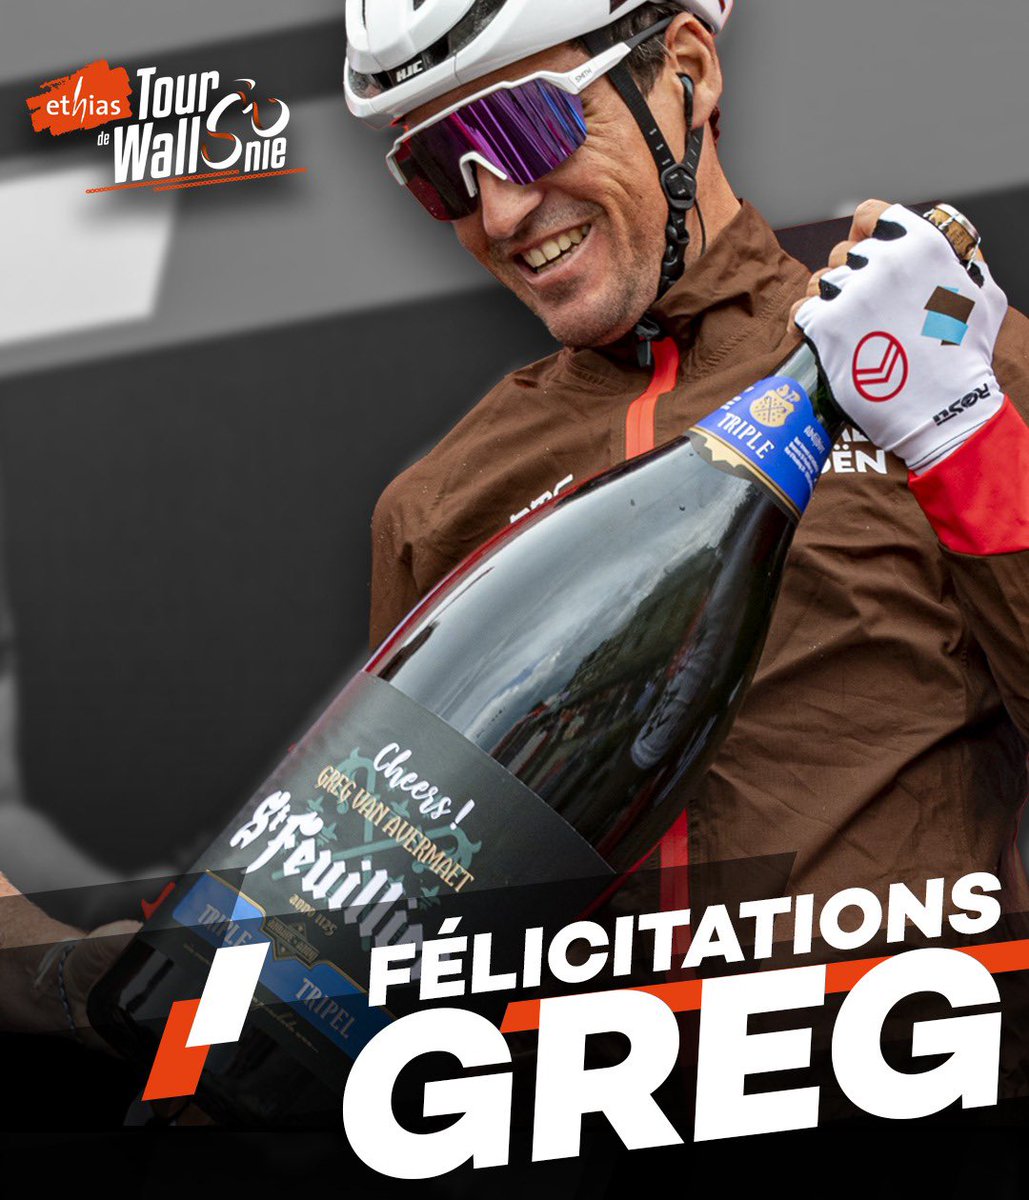 Félicitations pour ta brillante carrière @GregVanAvermaet @AG2RCITROENTEAM 👉🏻 double vainqueur #ethiastourdewallonie 2011-2013! 👍👏🏻 Bonne dernière course à @ParisTours !